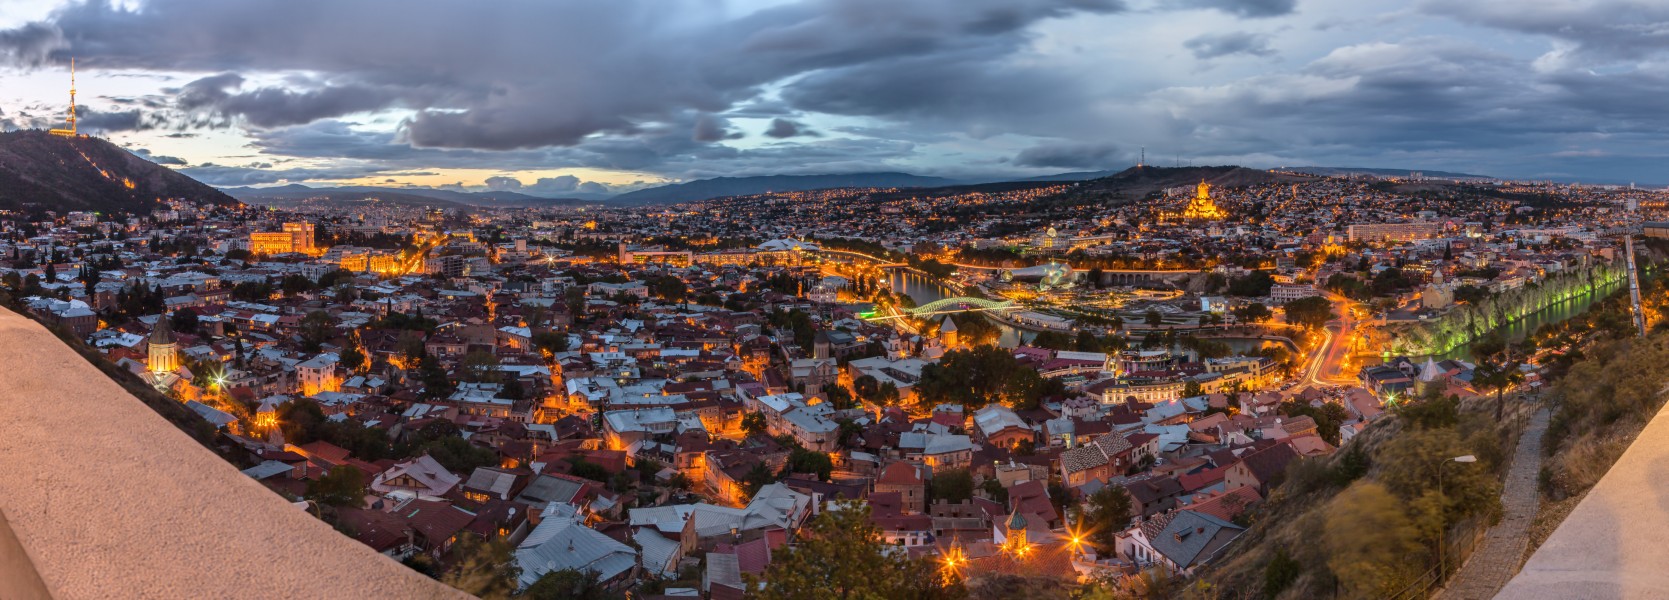 2017 - Georgia - The Evening Tbilisi